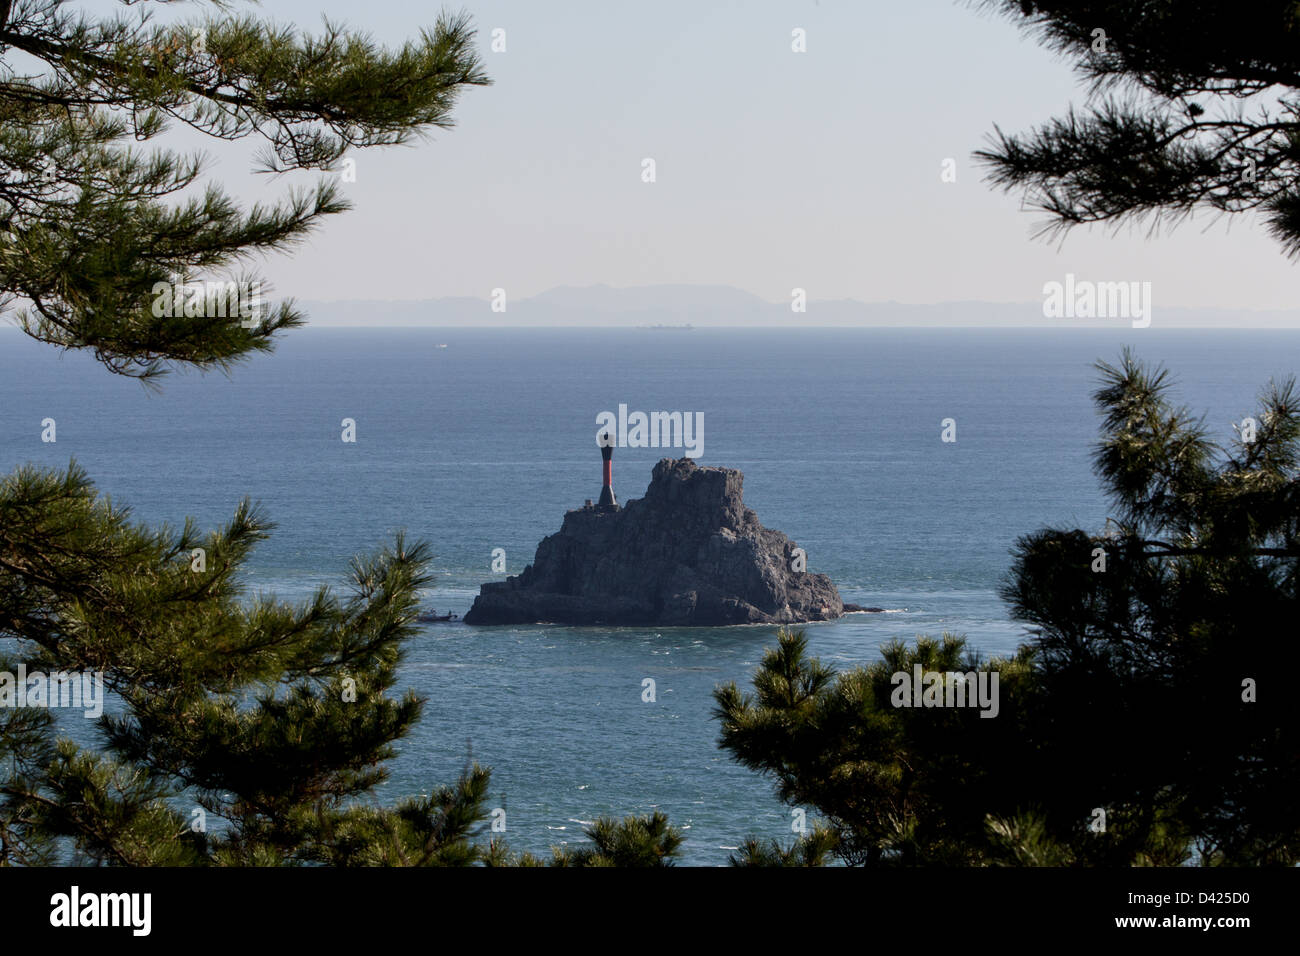 Sullo sfondo si possono vedere le isole giapponesi di Tsushima visto dalla città di Busan in Corea del Sud Foto Stock